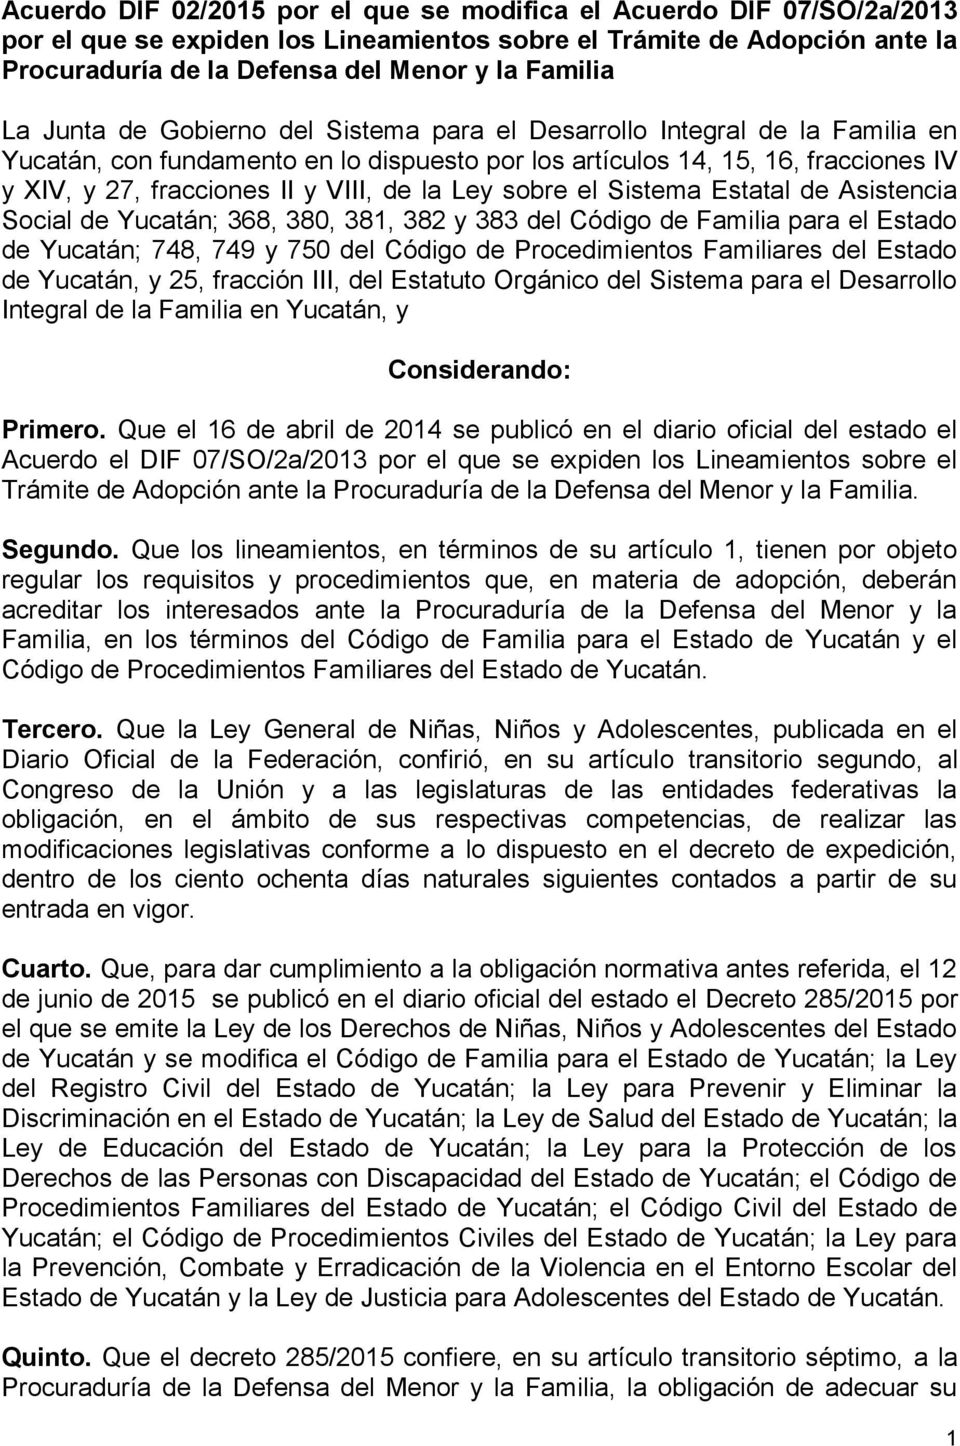 la Ley sobre el Sistema Estatal de Asistencia Social de Yucatán; 368, 380, 381, 382 y 383 del Código de Familia para el Estado de Yucatán; 748, 749 y 750 del Código de Procedimientos Familiares del